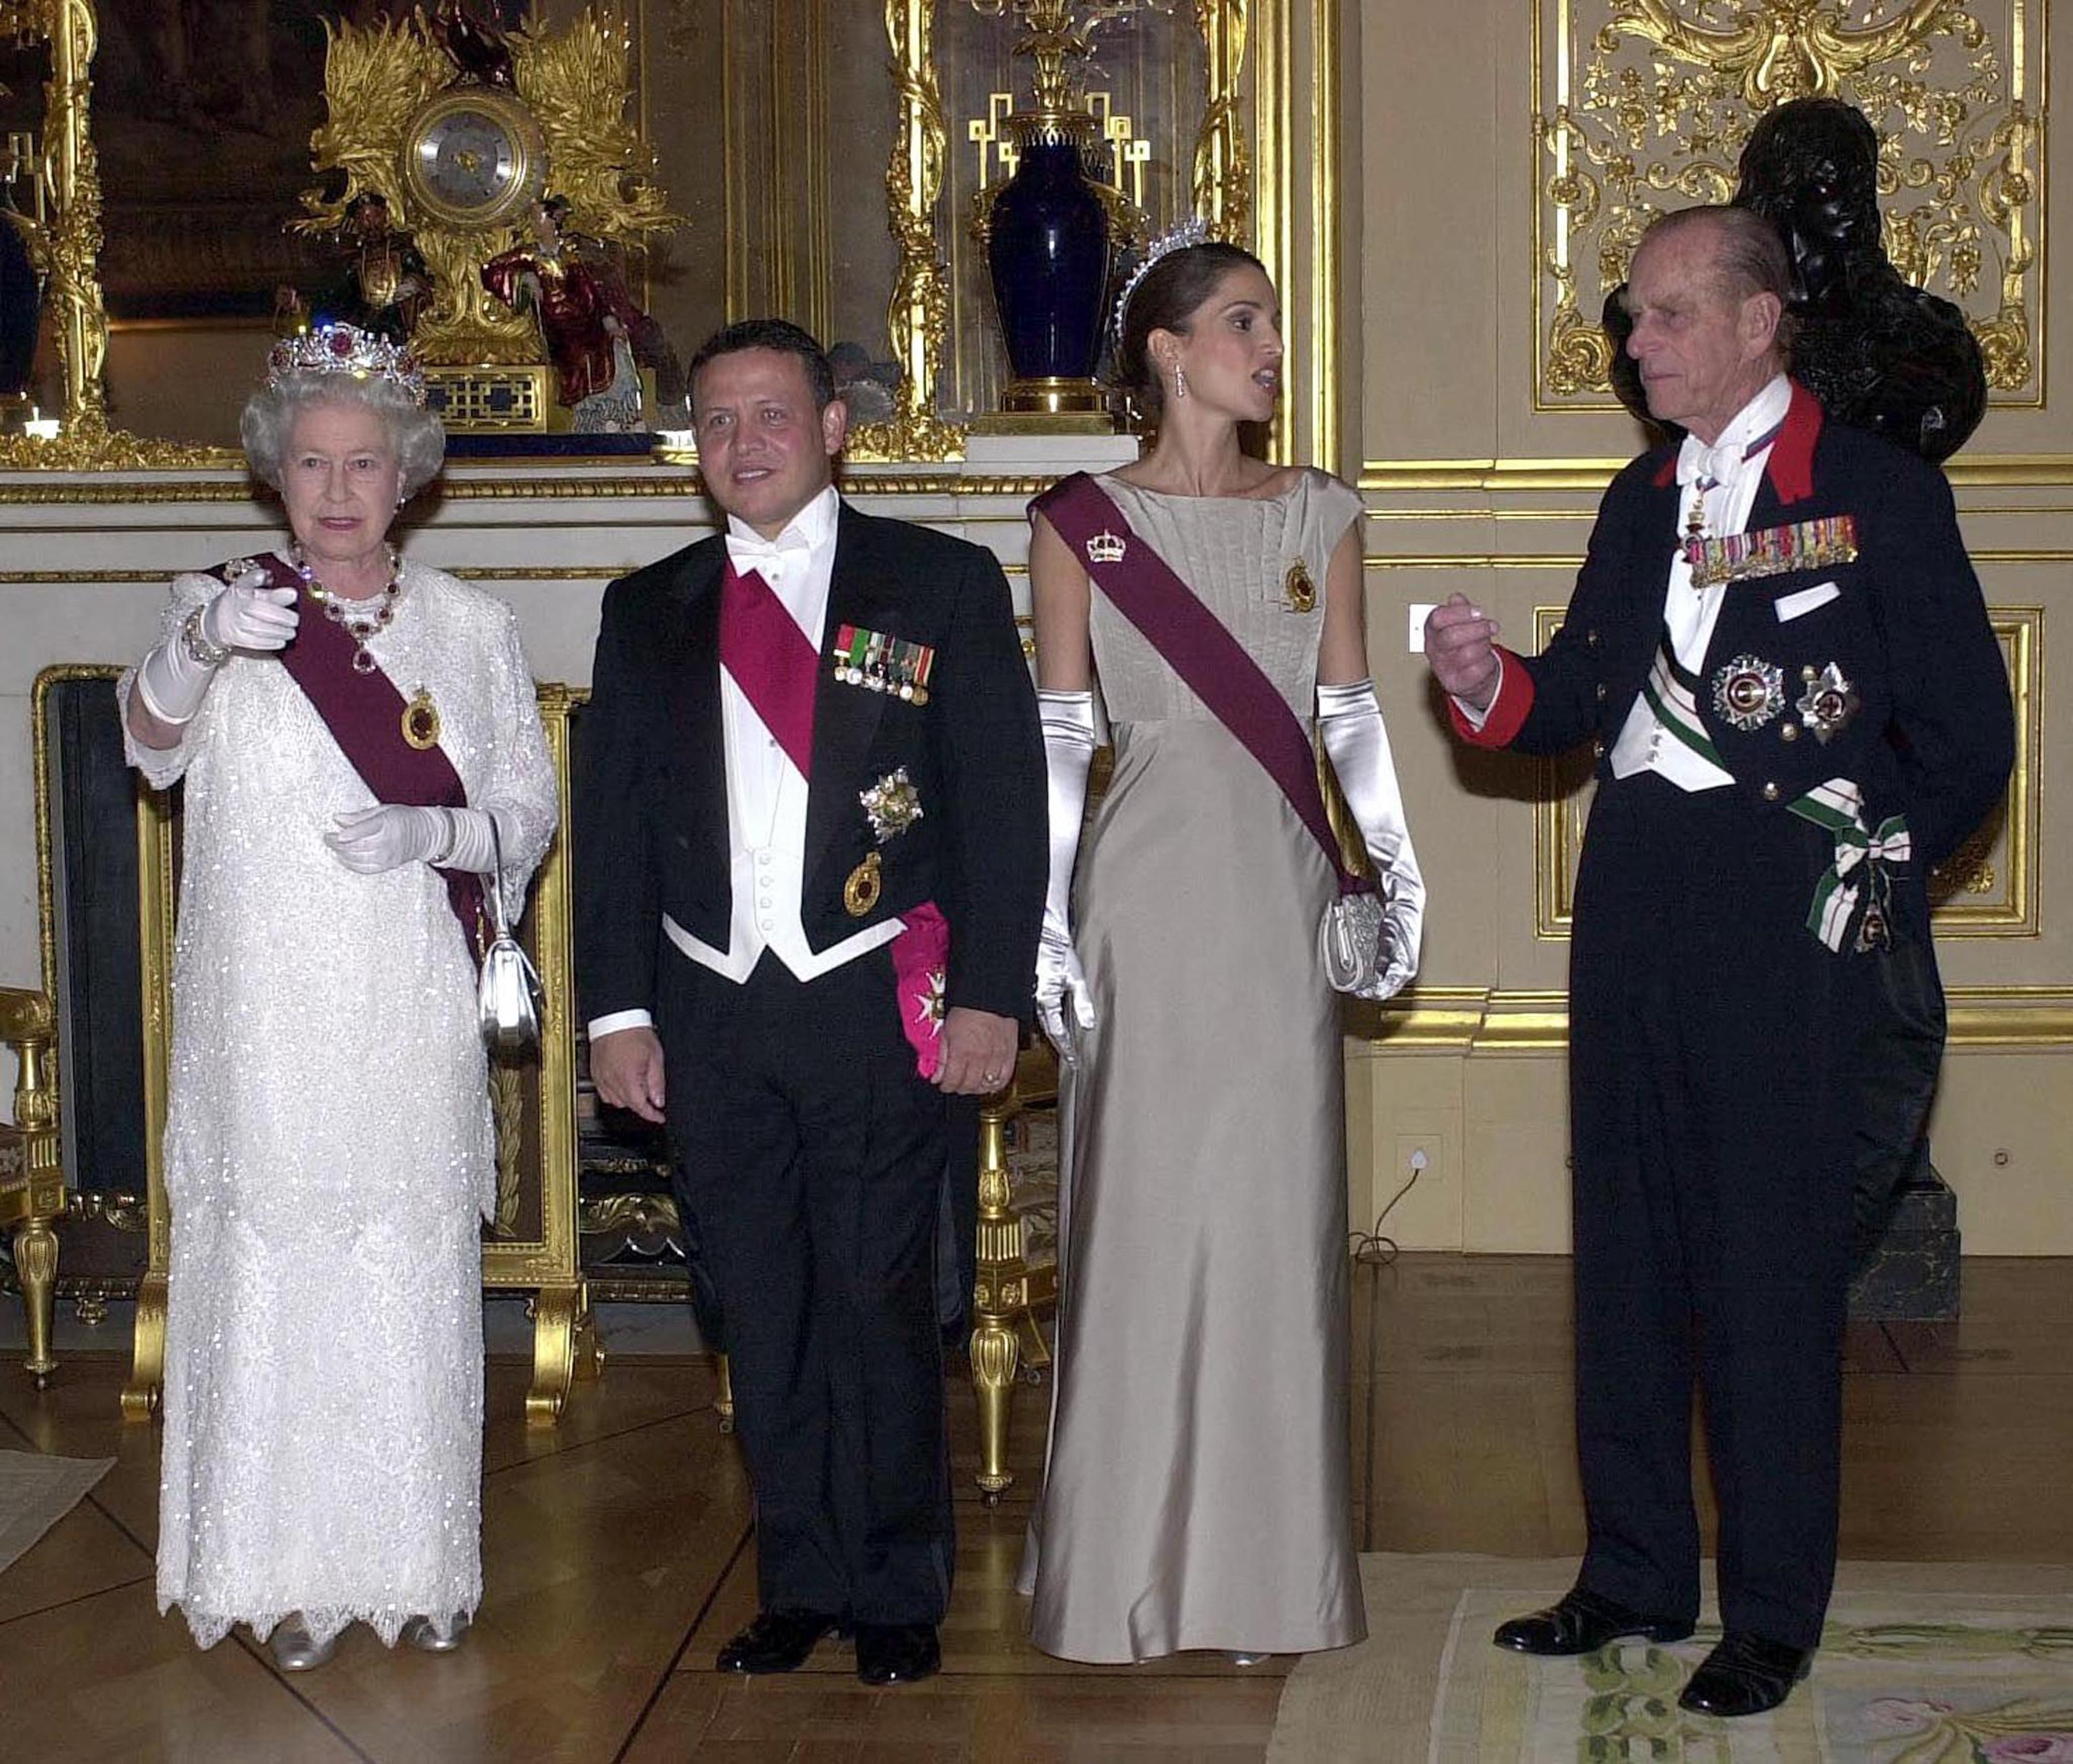 La reine Elizabeth II et le duc d’Édimbourg posent avec le roi Abdallah ll et la reine Rania de Jordanie avant d’assister à un banquet d’État au château de Windsor en novembre 2001 (AFP)